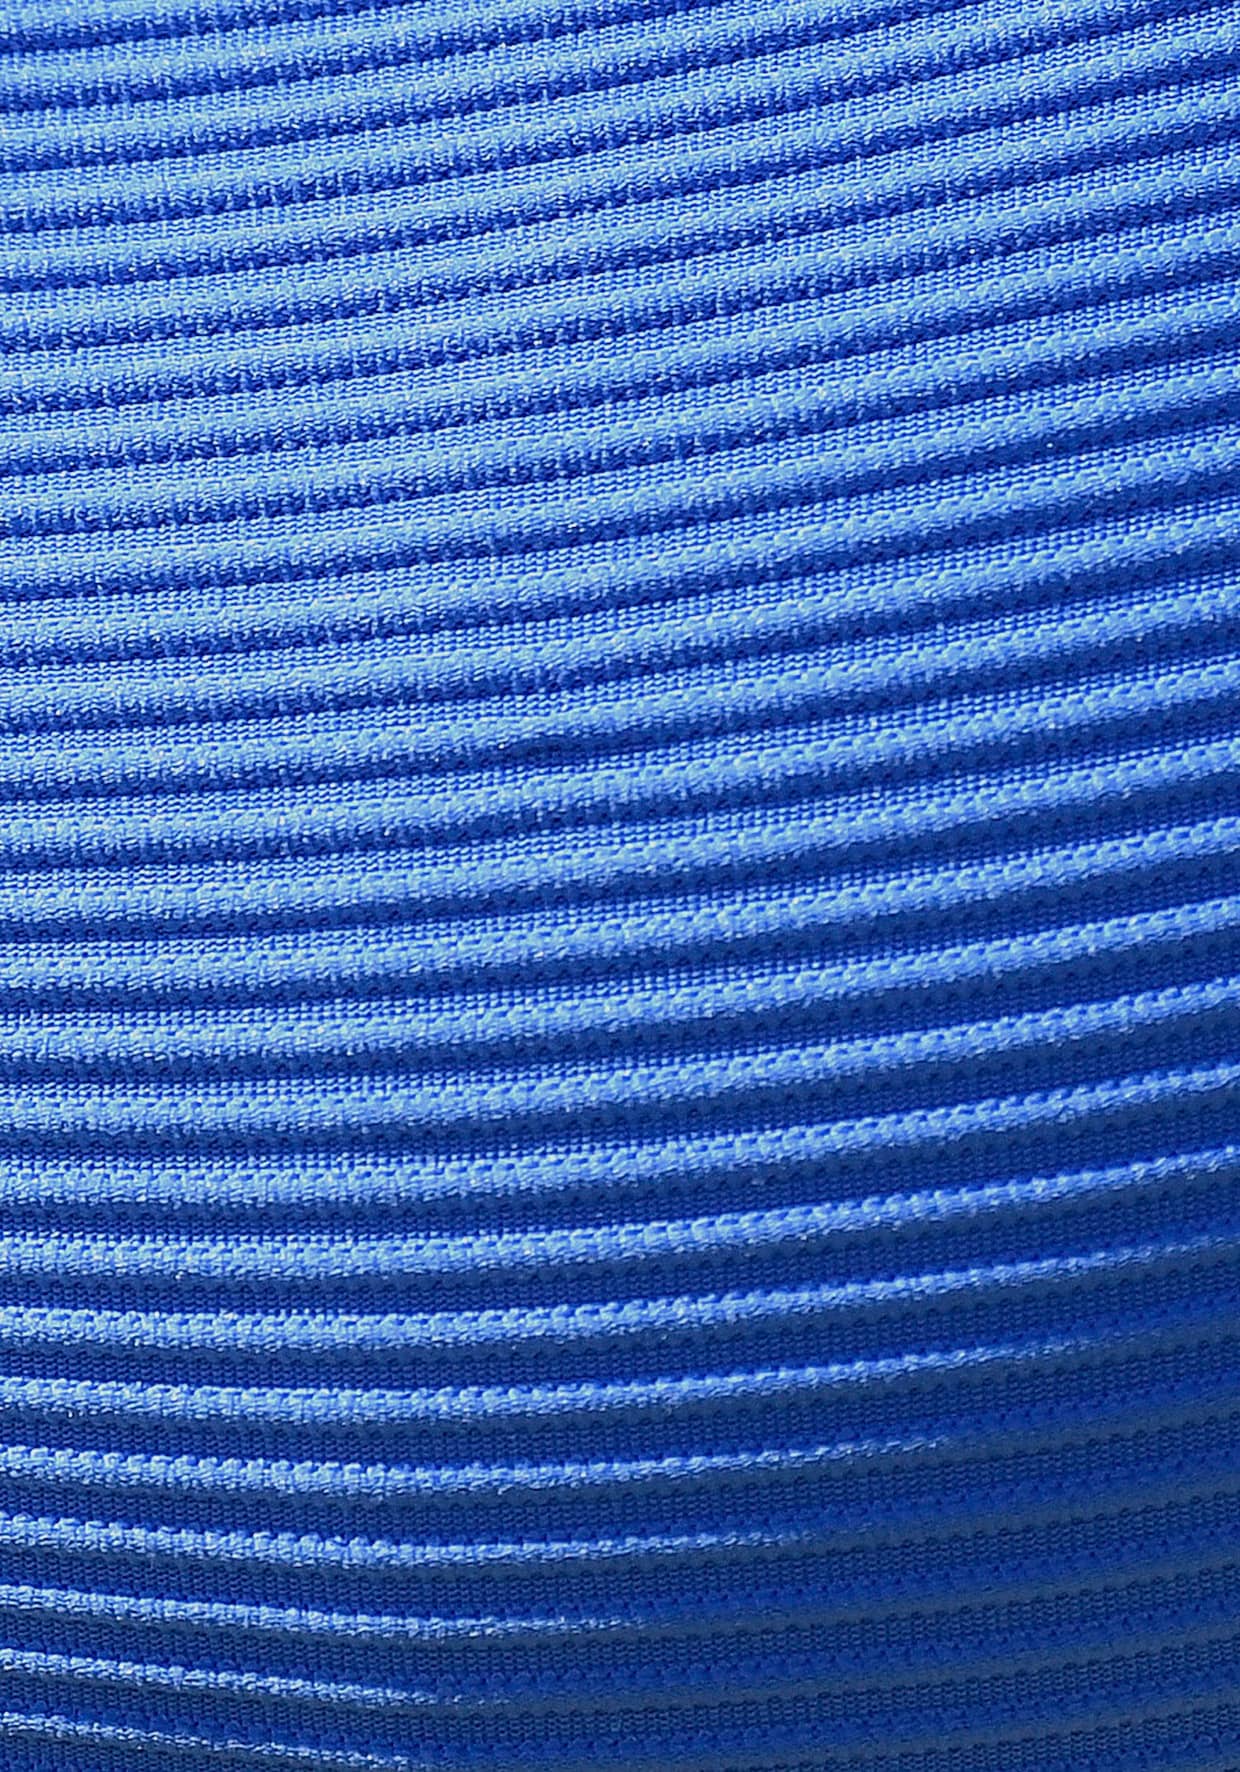 Sunseeker Push-upbikinitop - blauw